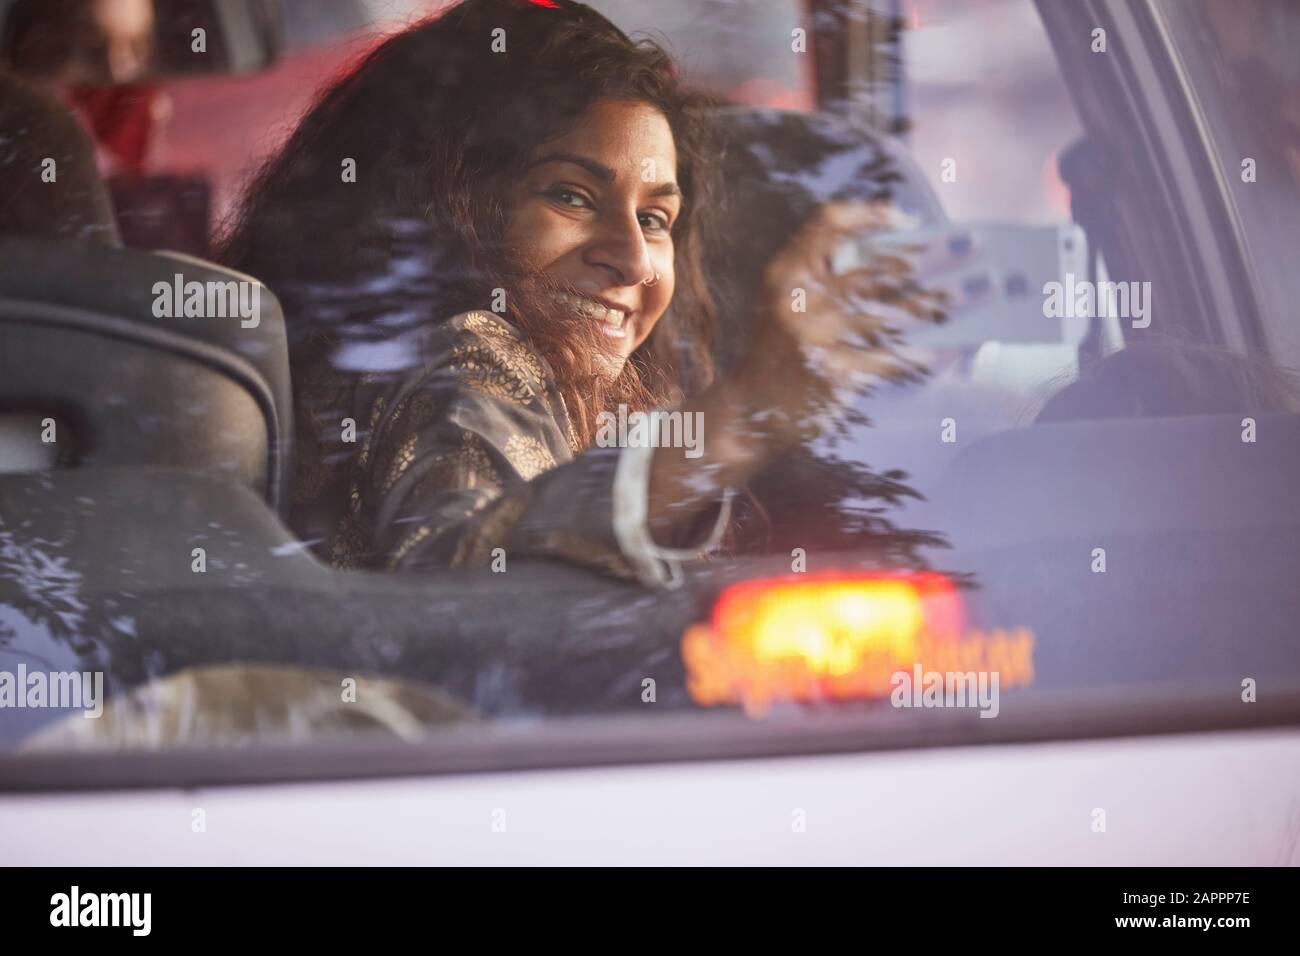 Femme qui tourne autour, prend la photo à l'intérieur du véhicule Banque D'Images